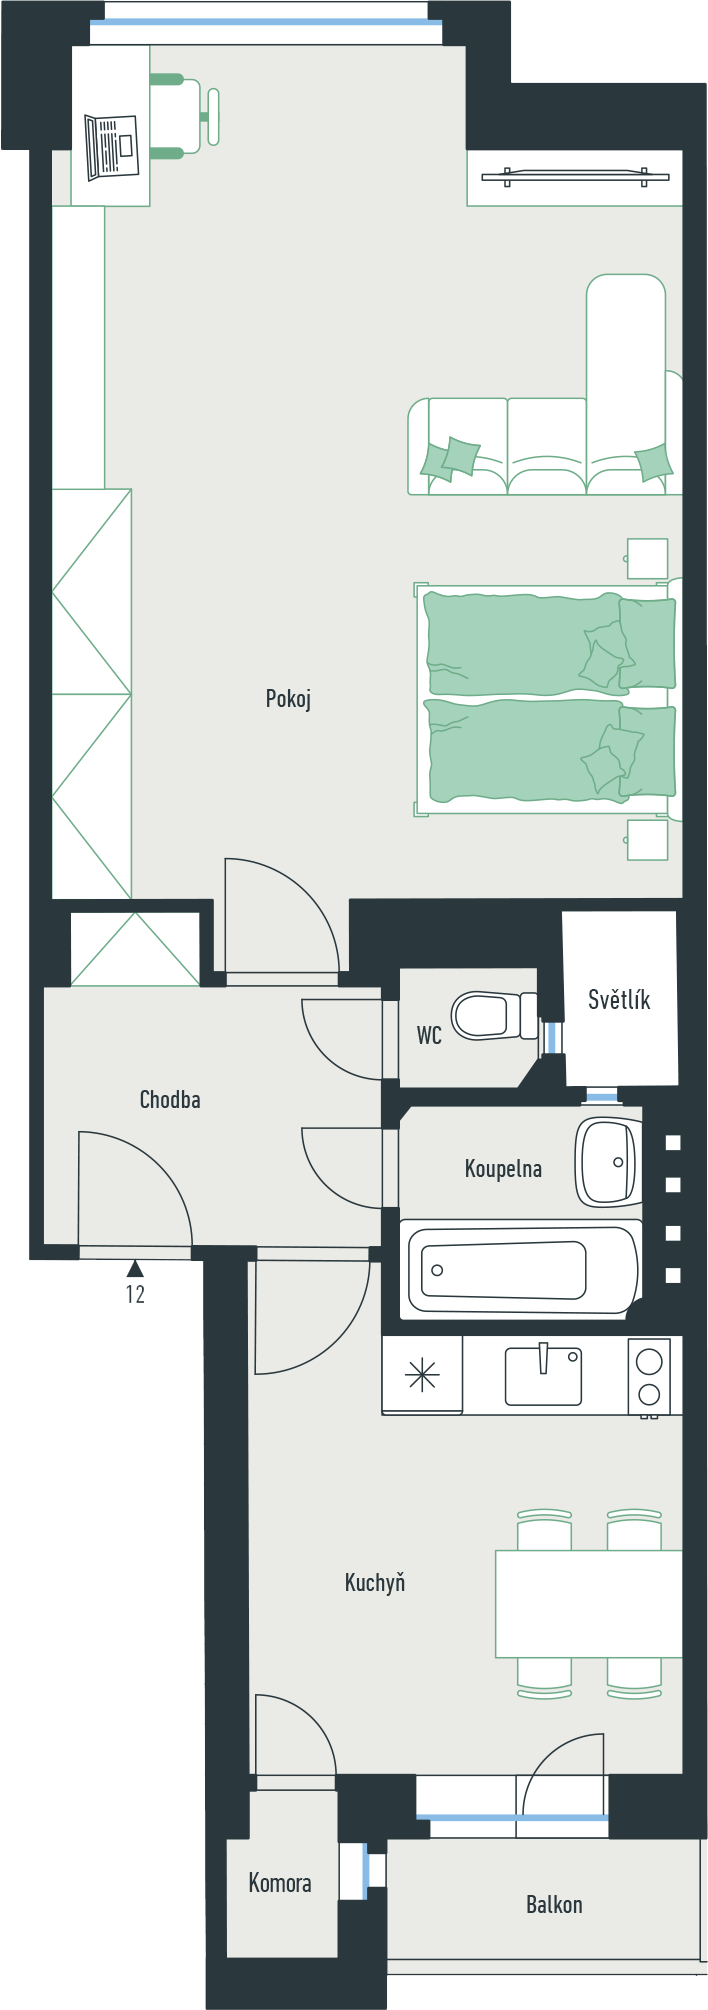 Bytová jednotka č. 12 o dispozici 2+kk a podlahové ploše 53,8 m² 2+kk